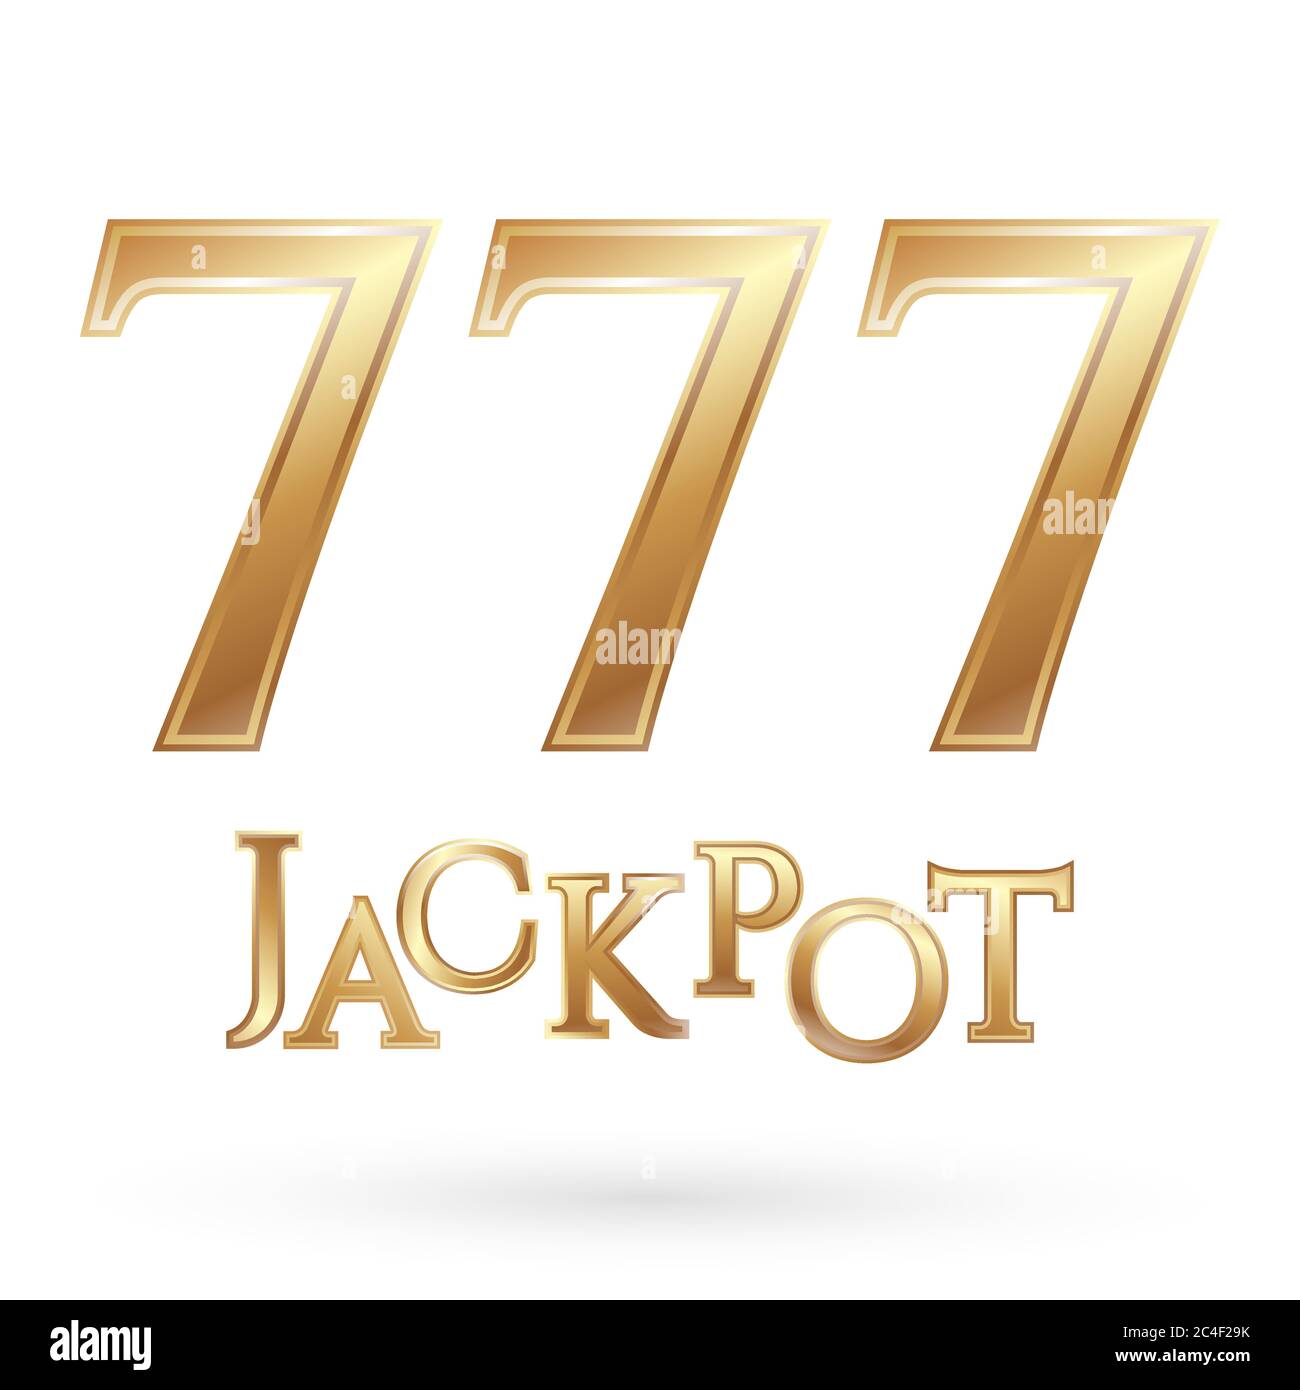 Số 777: Số 7 là số may mắn, nhưng còn số 777 thì sao? Nếu bạn là một người đam mê sòng bạc và muốn biết sự may mắn có nắm giữ các số 777, hãy xem hình ảnh này để cảm nhận sự ngọt ngào của chiến thắng đối với dãy số này.